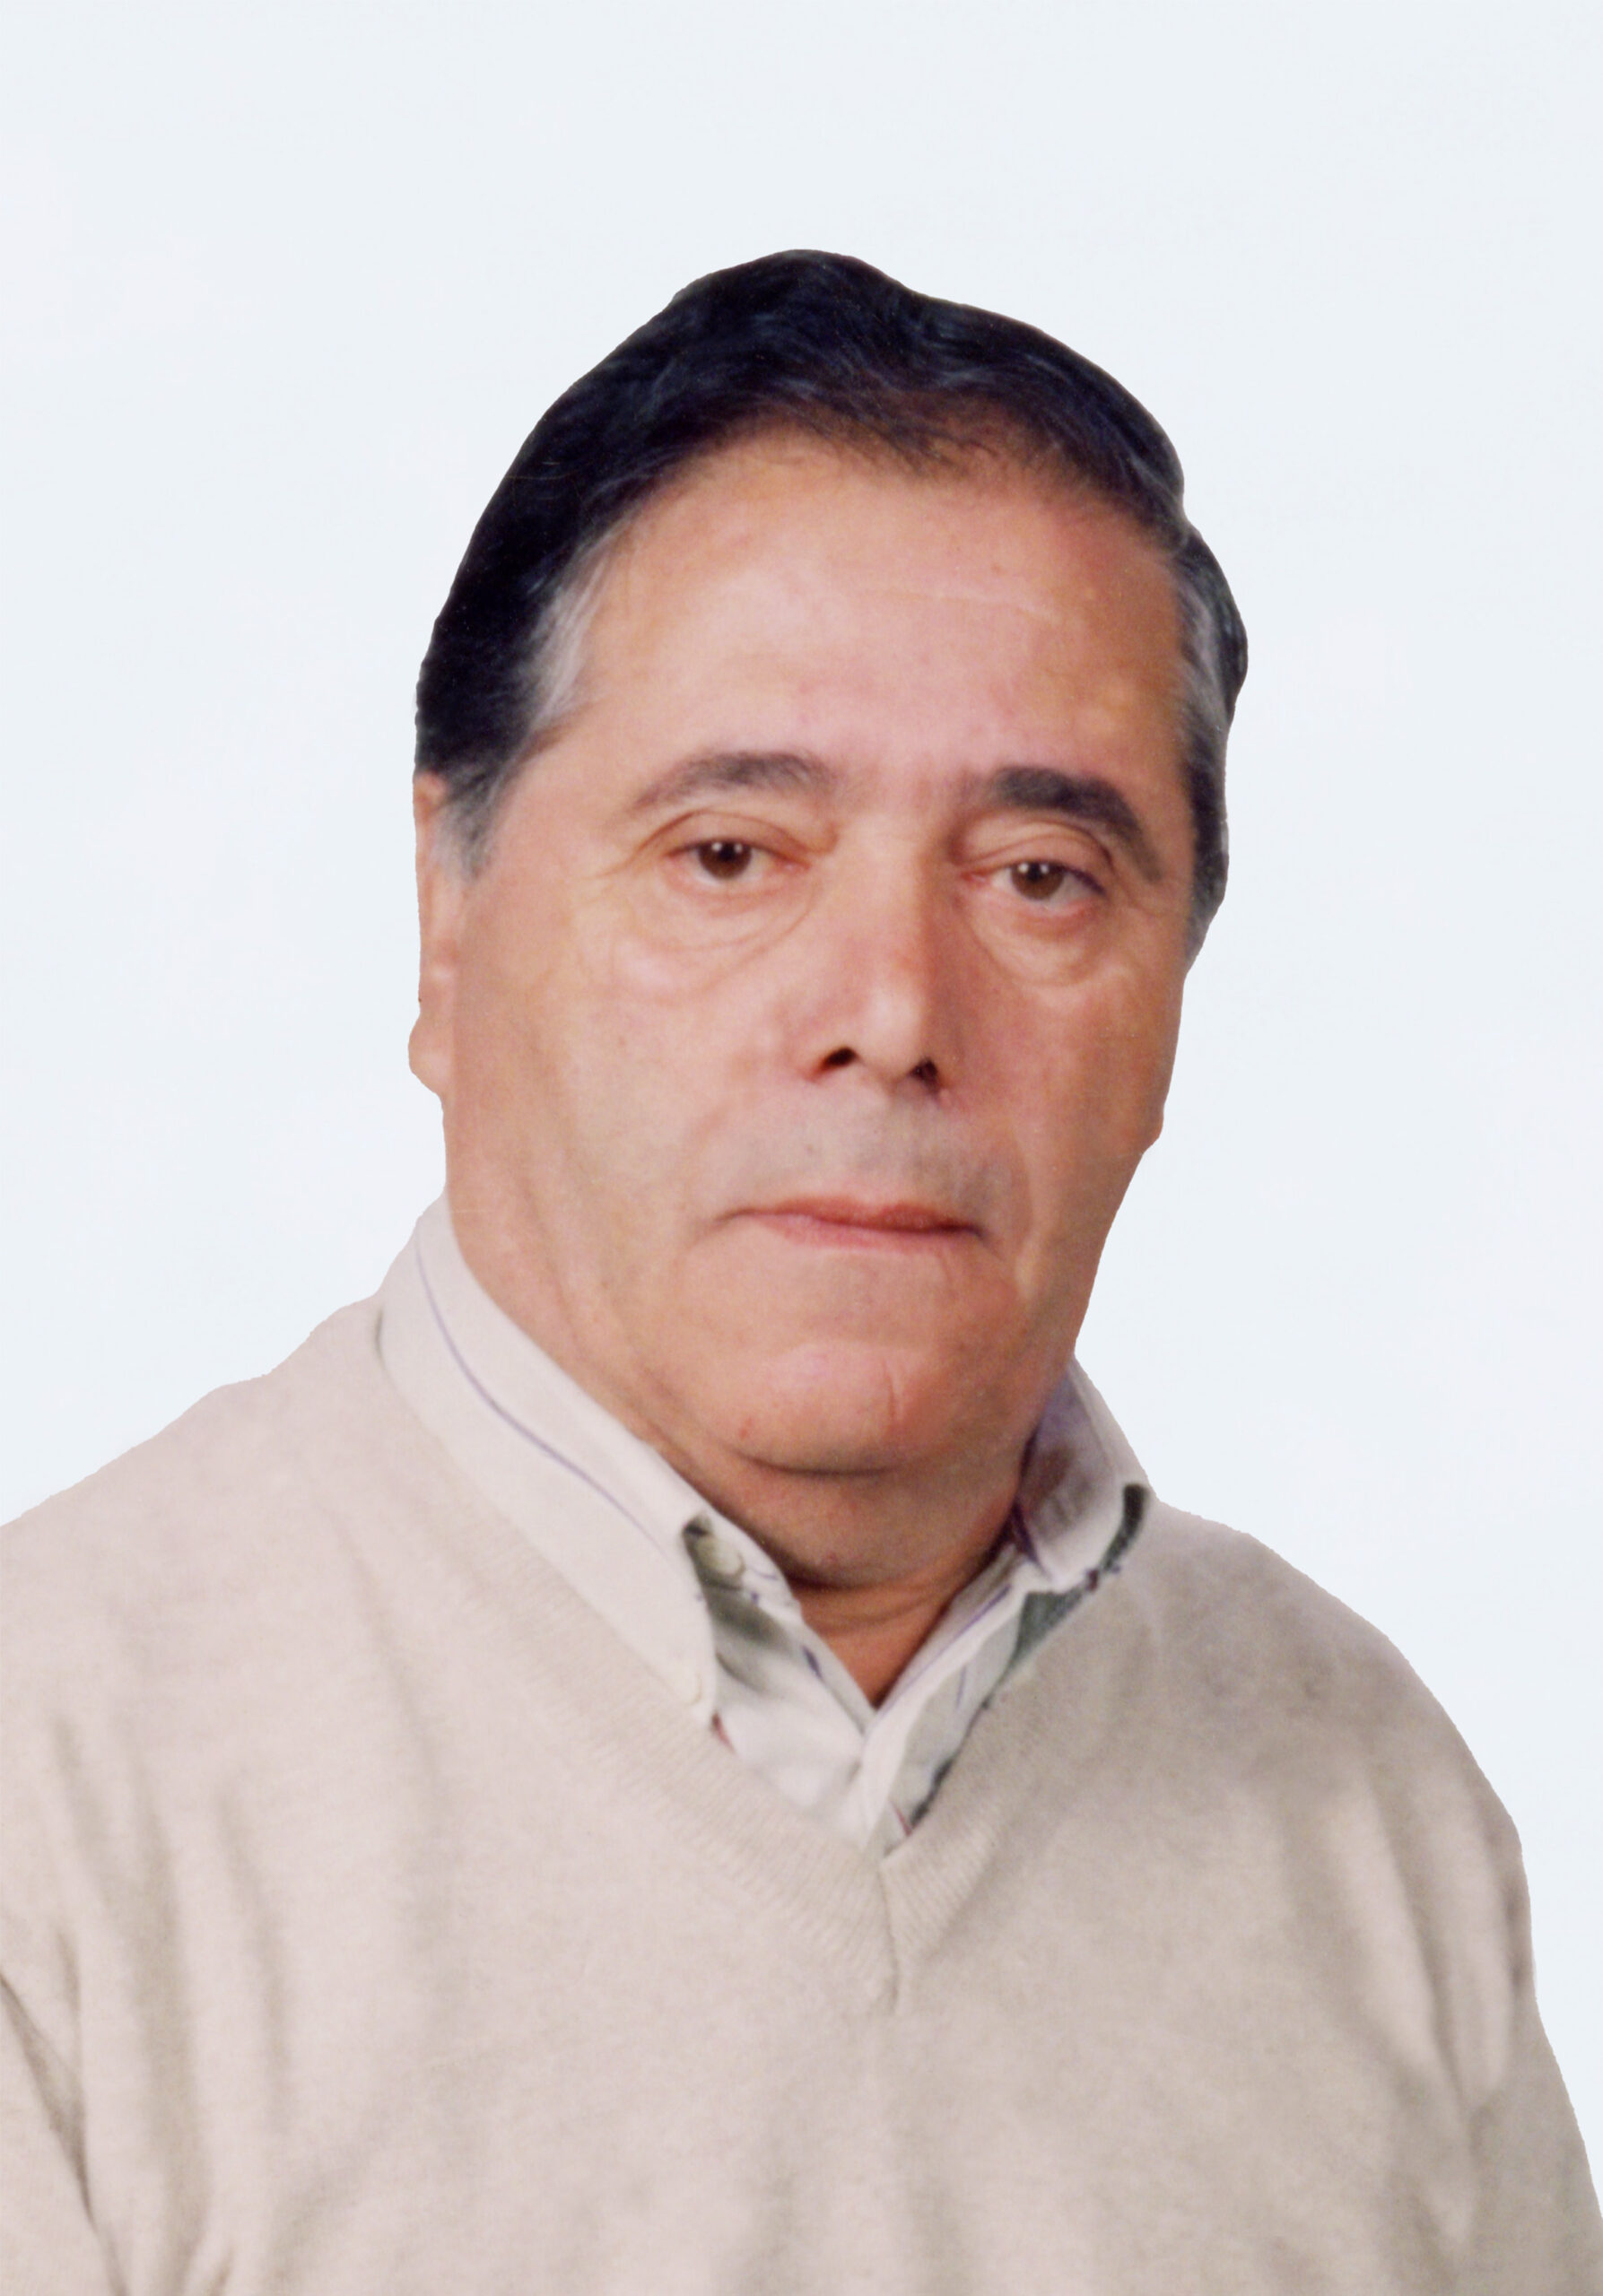 António Manuel de Sousa Dias